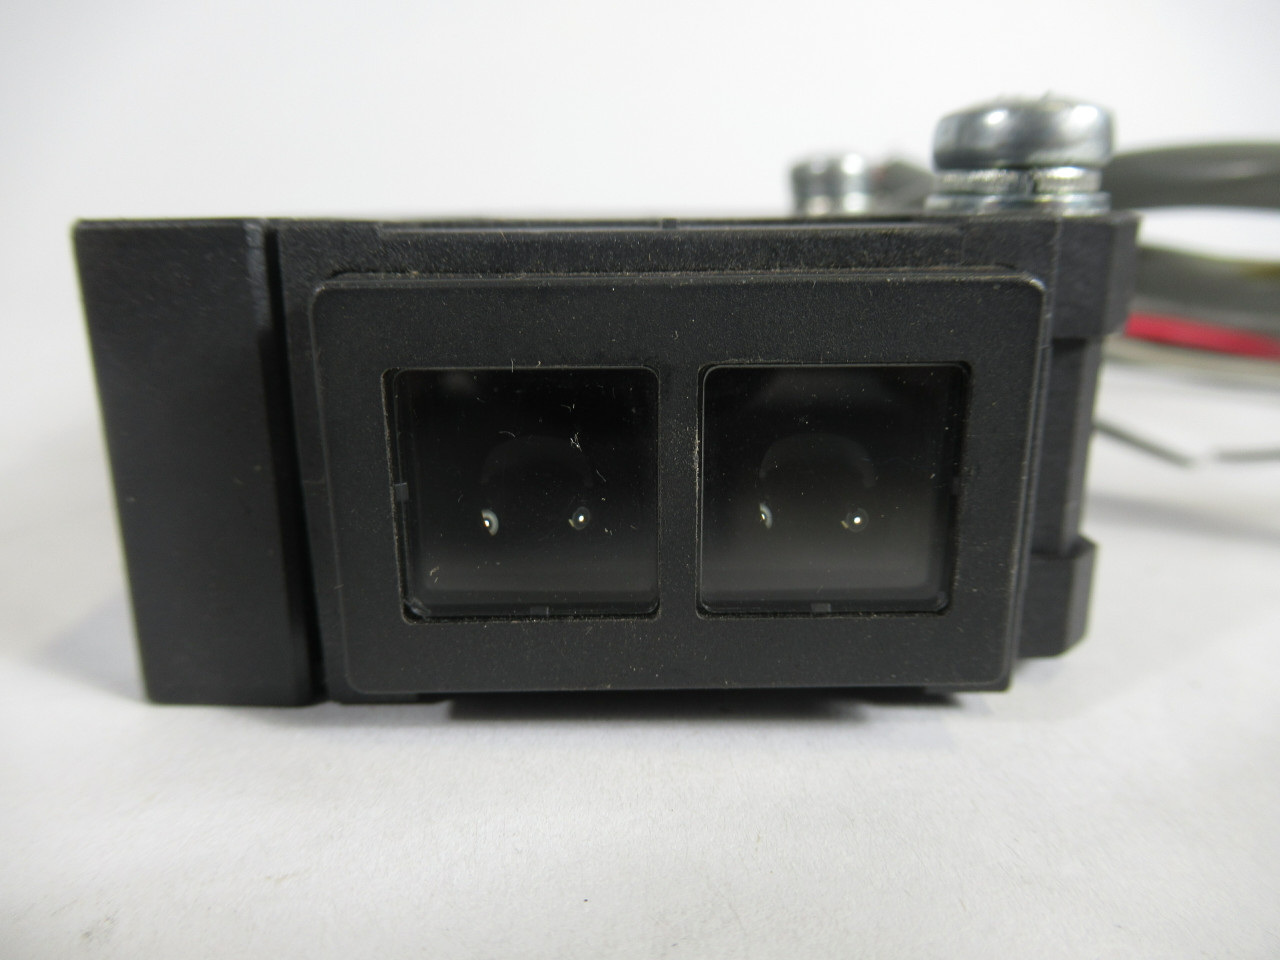 Datasensor S2-5-B3 Photoelectric Sensor 10-30VDC 34"Length USED